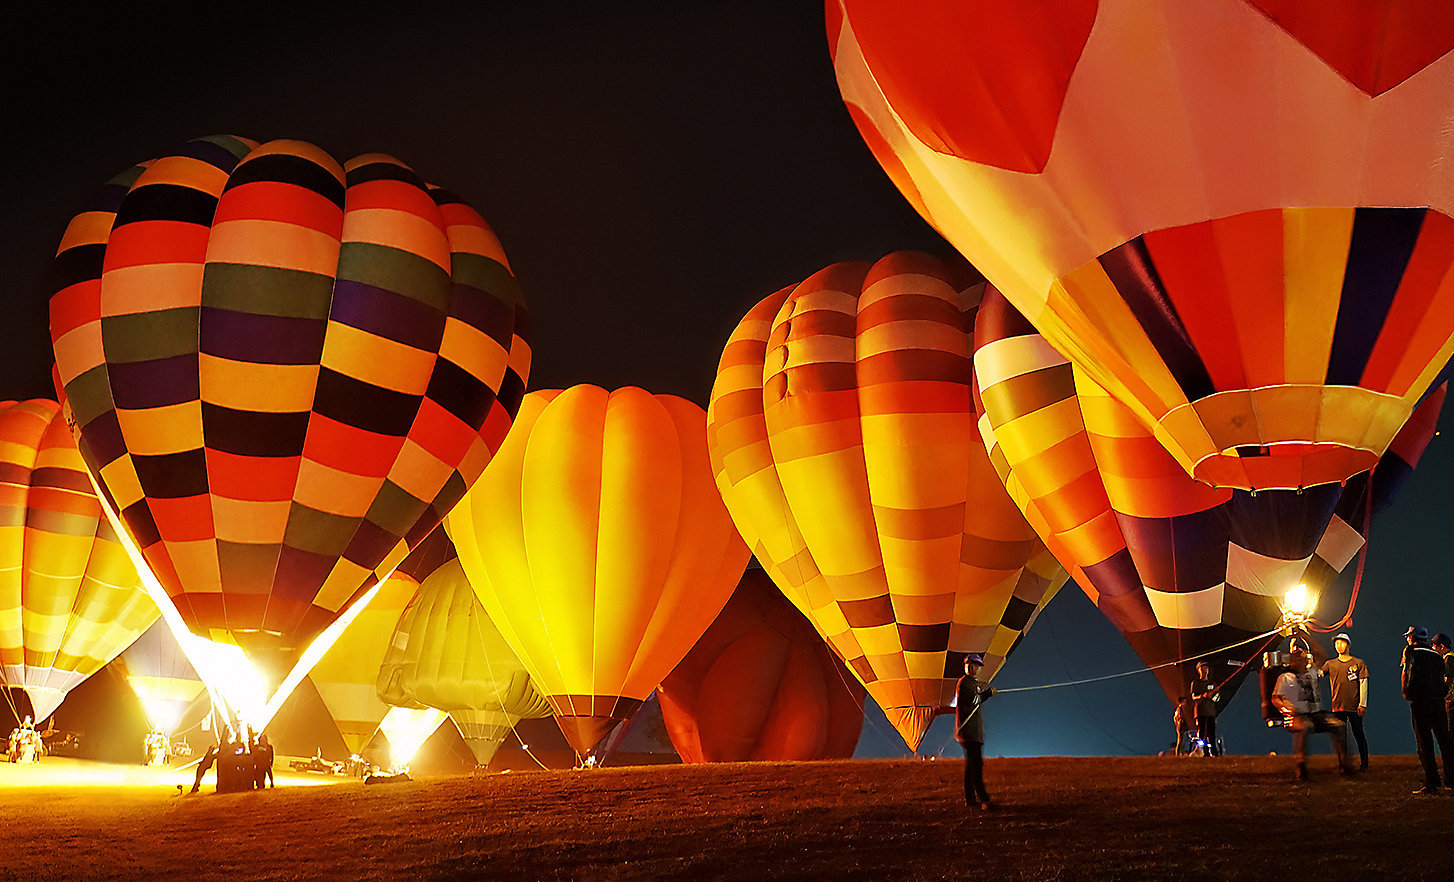 Snimak ekrana sa šarenim letećim balonima koji uzleću noću